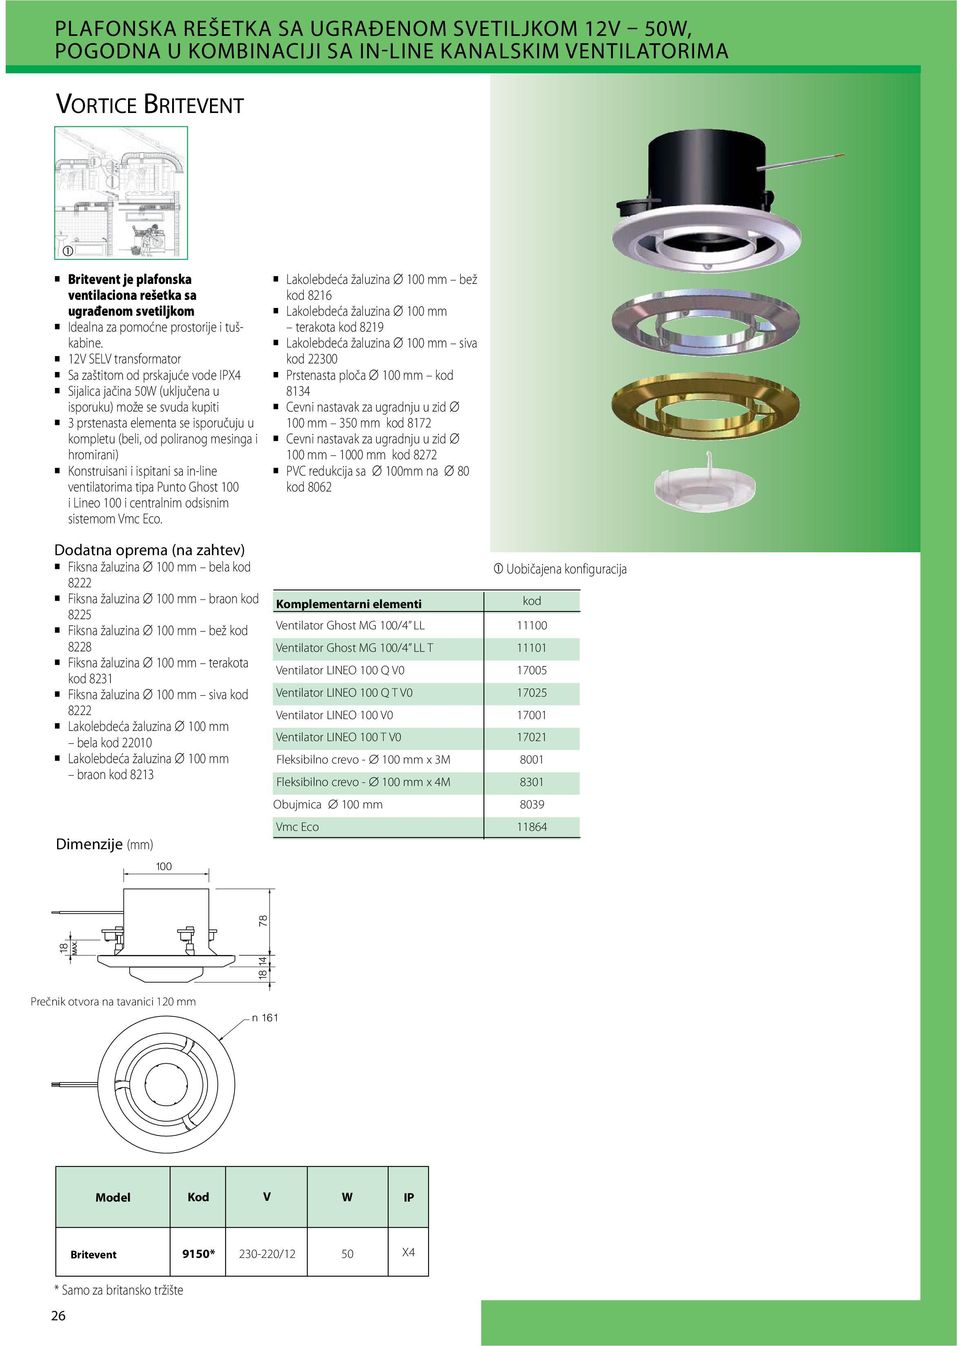 12V SLV transformator Sa zaštitom od prskajuće vode IPX4 Sijalica jačina 50W (uključena u isporuku) može se svuda kupiti 3 prstenasta elementa se isporučuju u kompletu (beli, od poliranog mesinga i